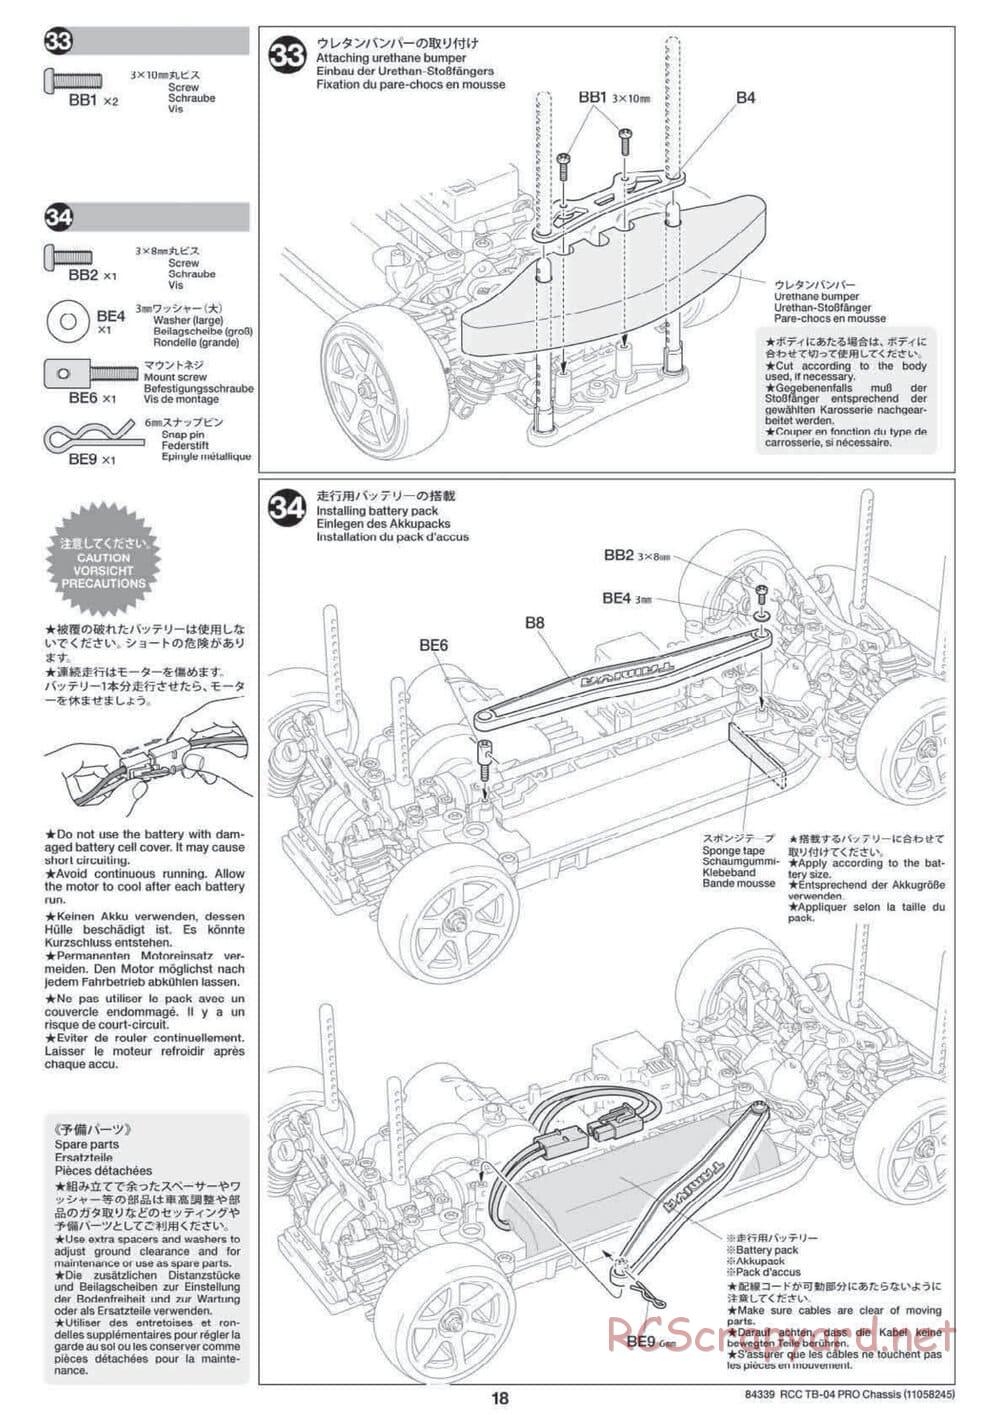 Tamiya - TB-04 Pro Chassis - Manual - Page 18